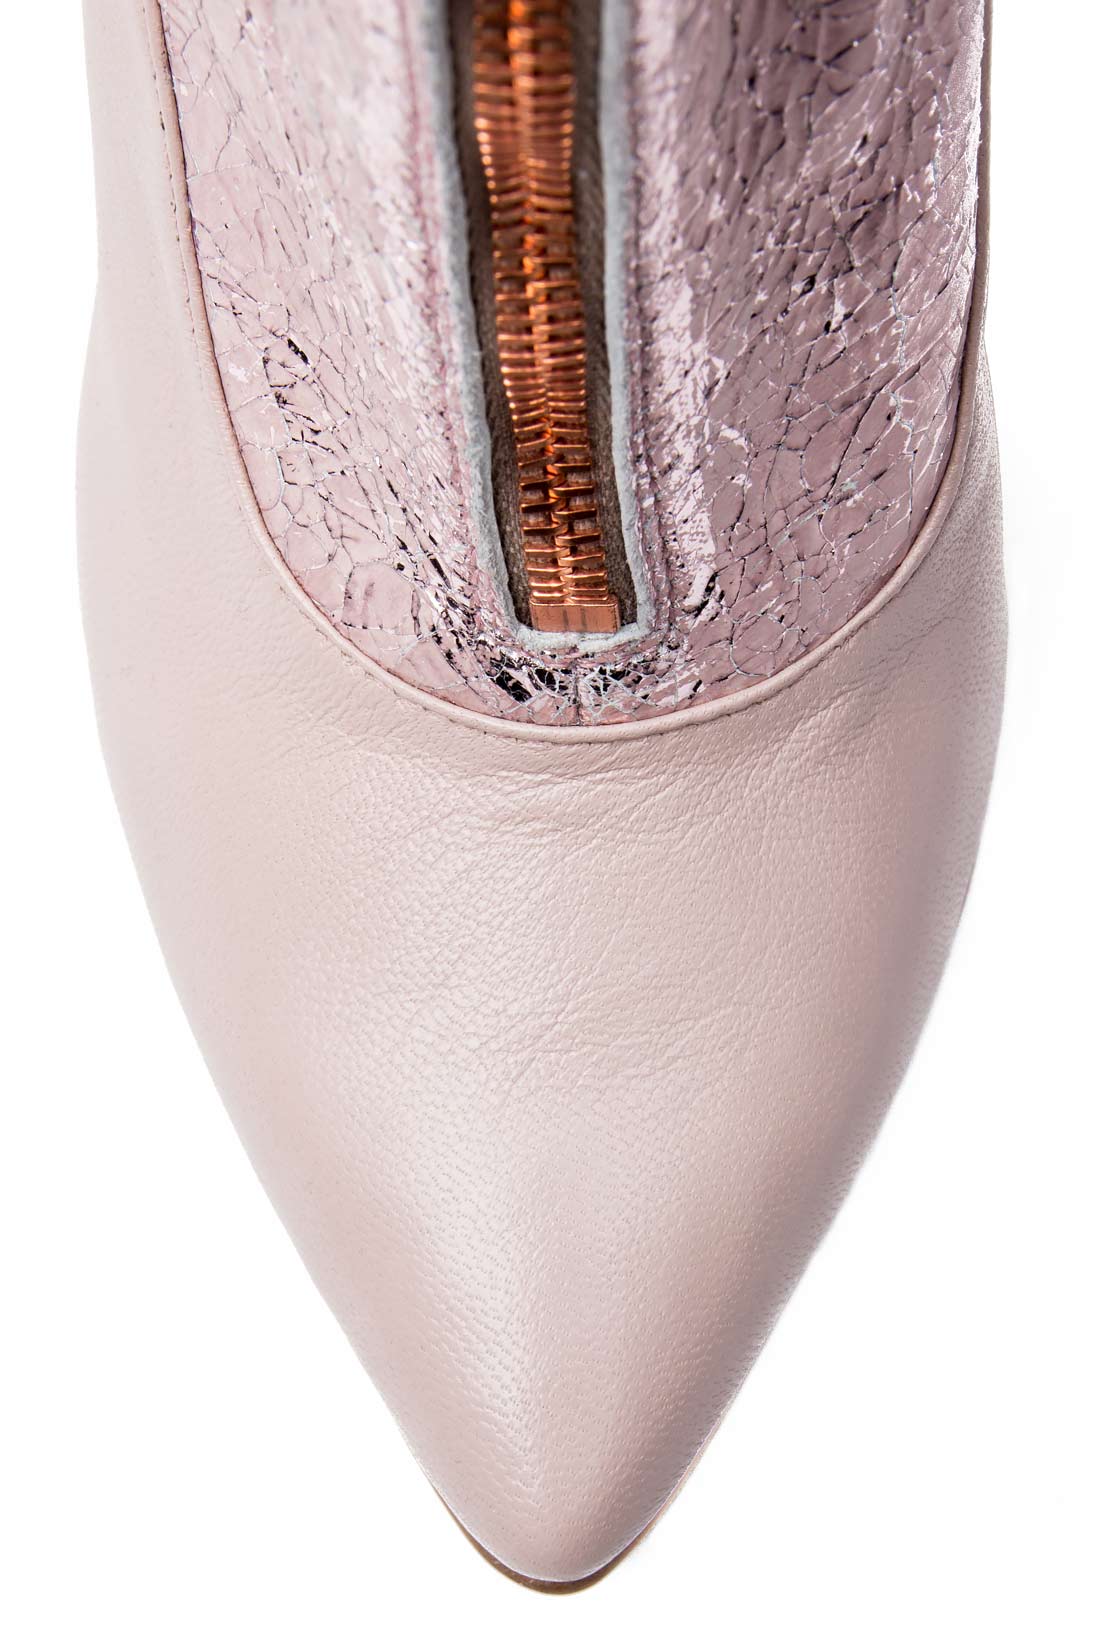 Bottines en cuir rose-poudré Mono Shoes by Dumitru Mihaica image 3